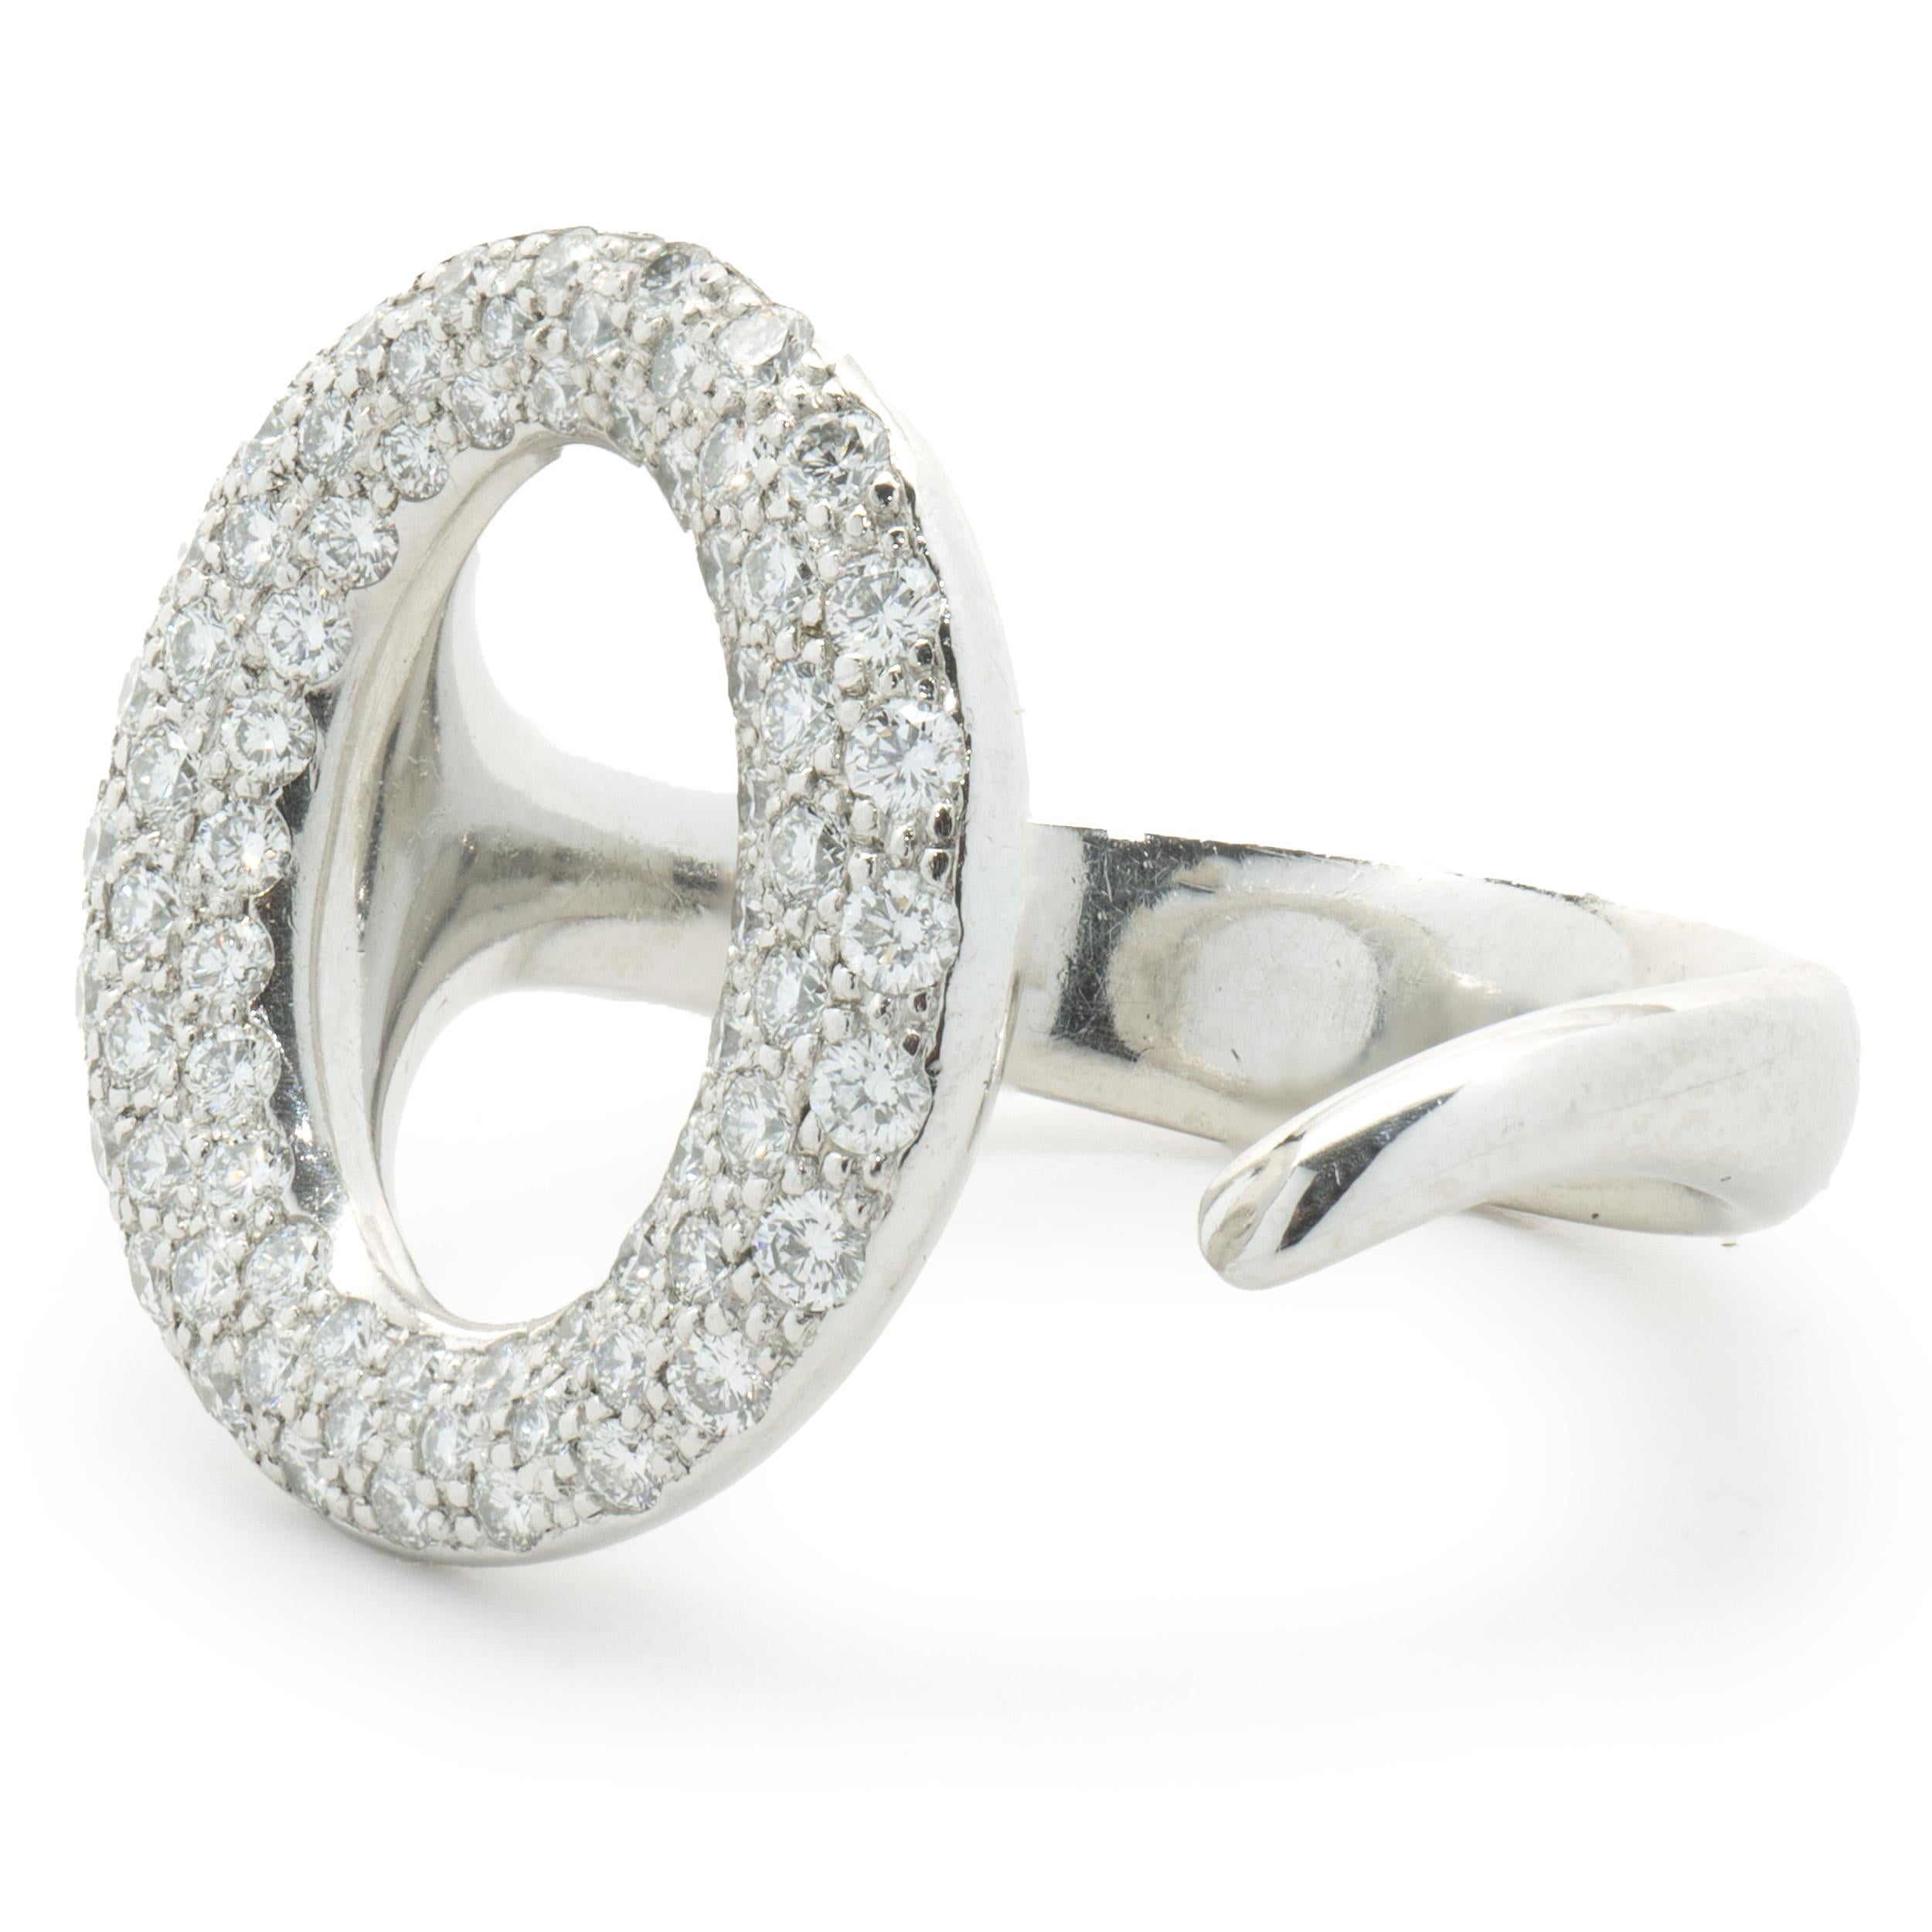 Créateur : Tiffany & Co. / Elsa Peretti
MATERIAL : platine
Diamant : 72 diamants ronds de taille brillant = 0,80cttw
Couleur : G
Clarté : VS1-2
Dimensions : la partie supérieure de l'anneau mesure 18.7 mm de large
Taille : 7.5
Poids : 13,40 grammes
